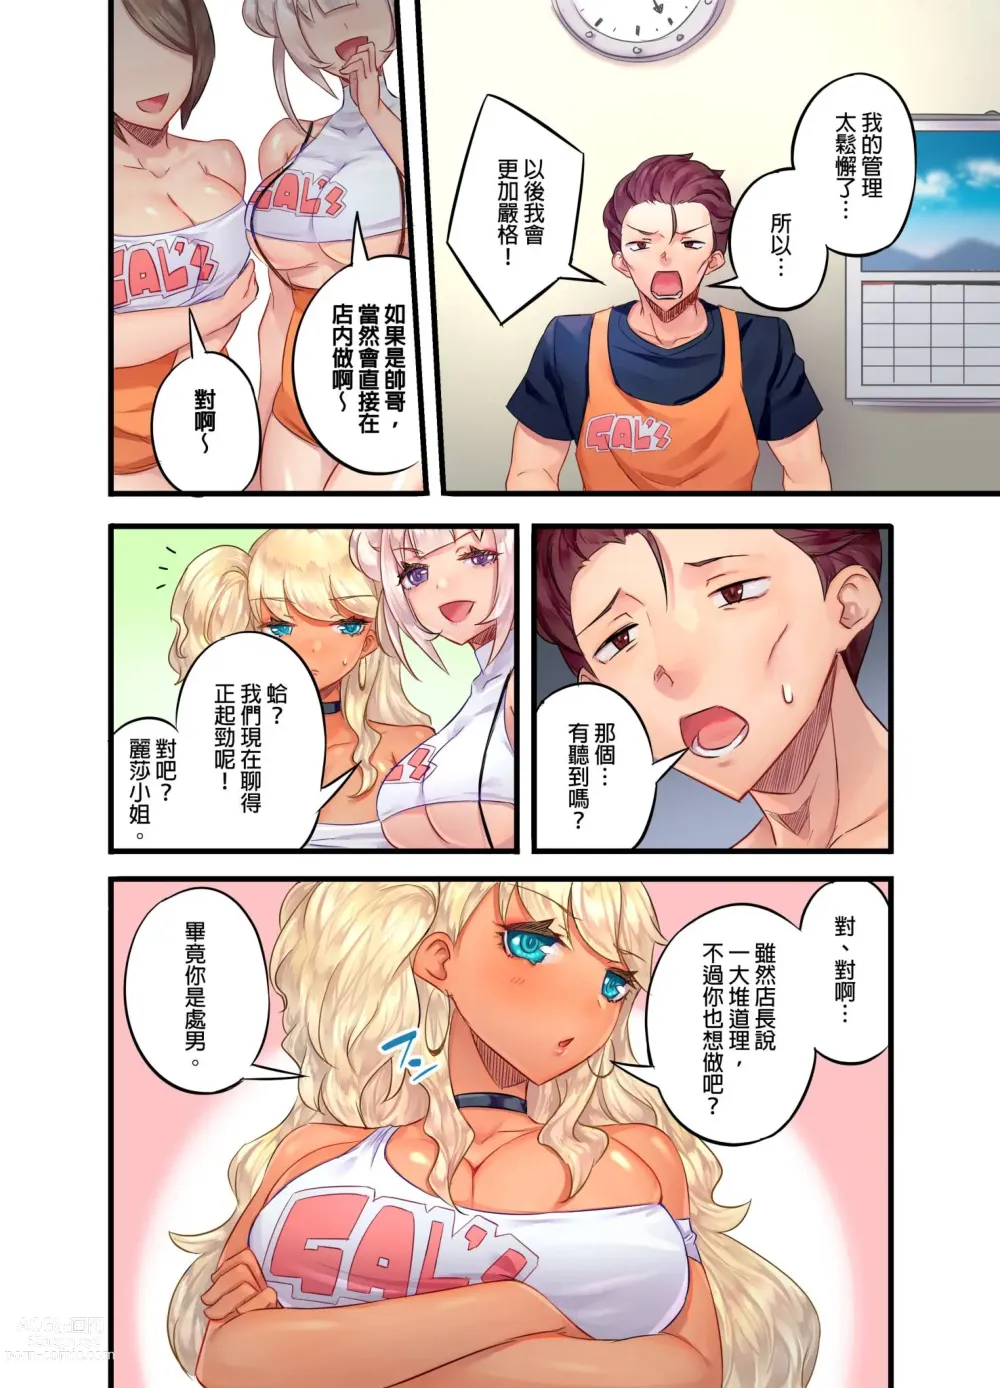 Page 8 of manga 黑辣妹的高潮管理～吊盡囂張處女婊子的胃口，再獎賞她高潮～ Ch.1-9 Complete